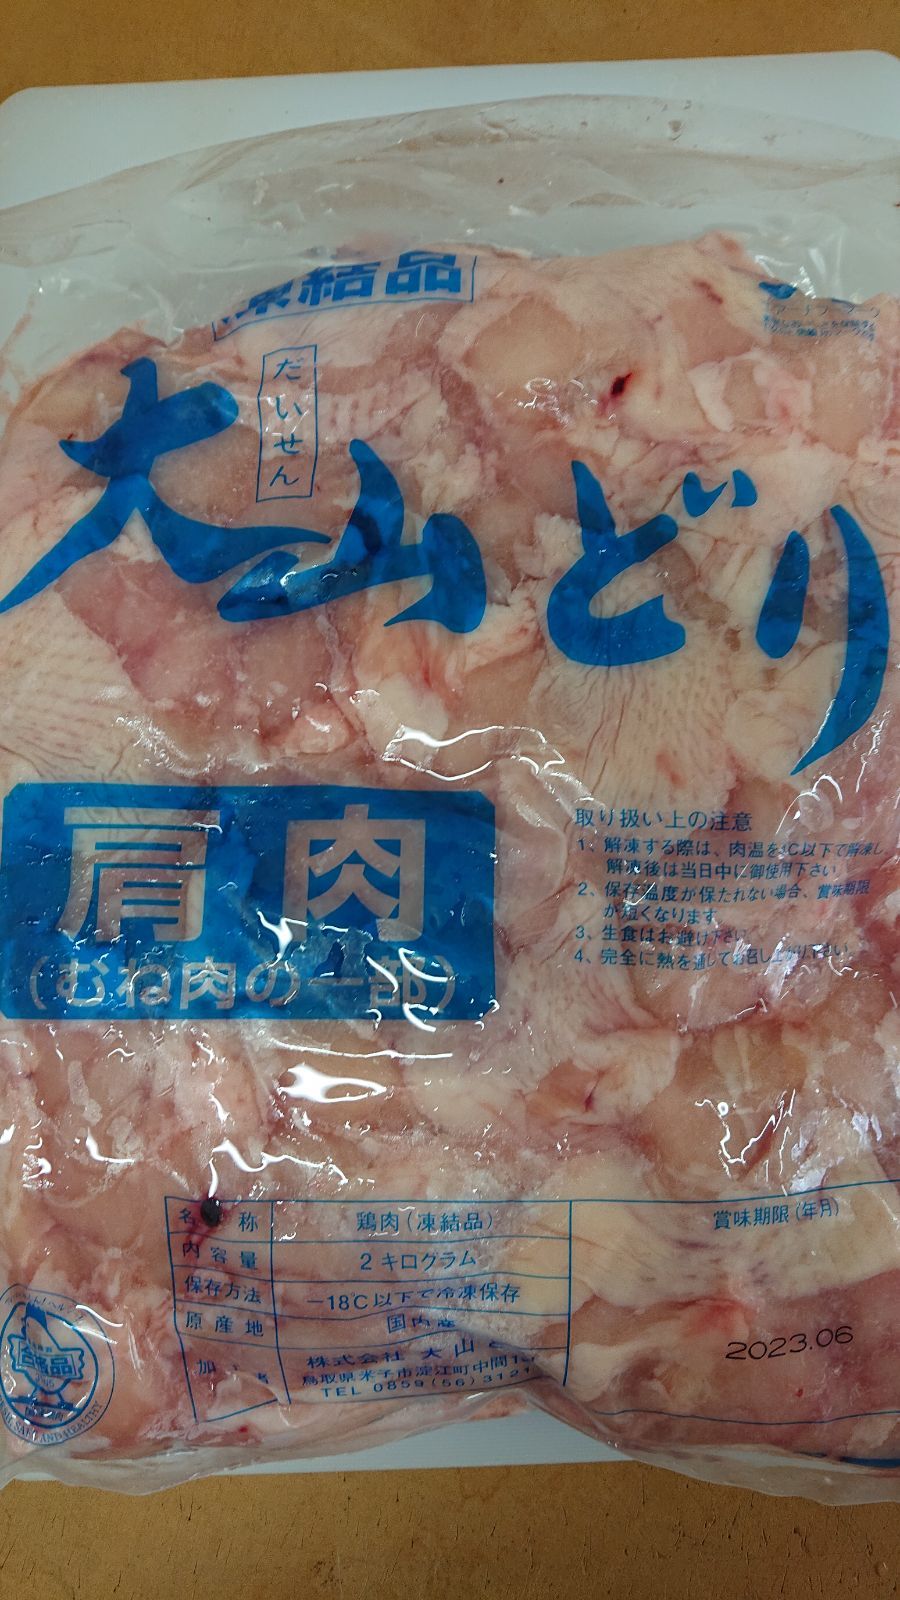 鳥取県産大山どり肩肉2kg産地凍結品 - メルカリ